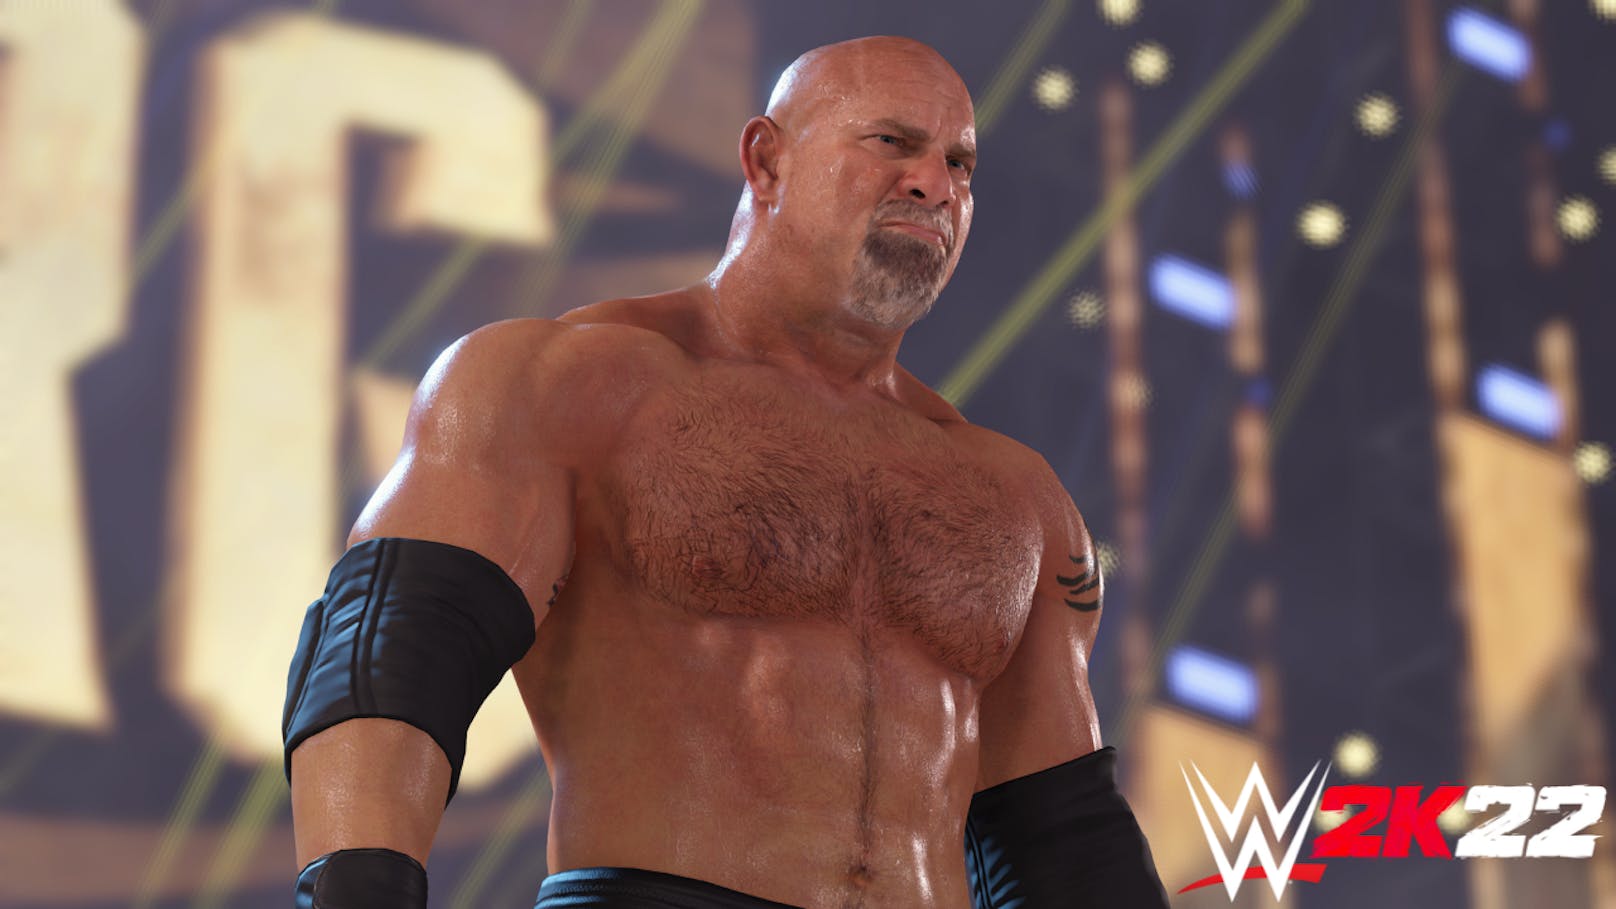 2K enthüllt Top 10 der Features für "WWE 2K22"